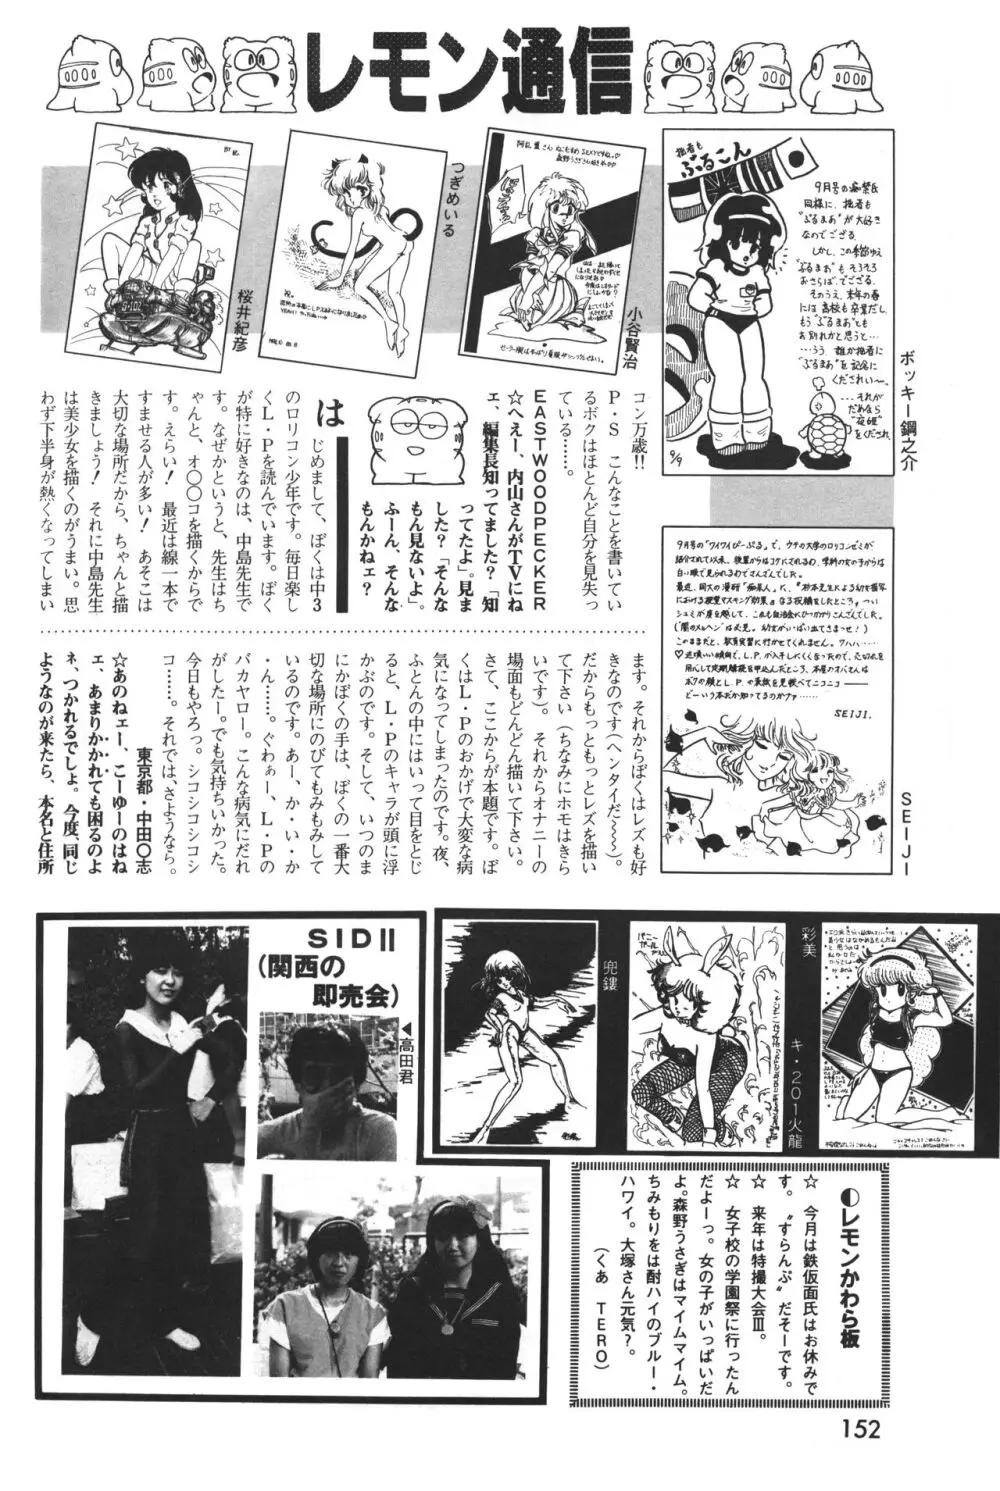 レモンピープル 1983年12月号 vol.23 153ページ